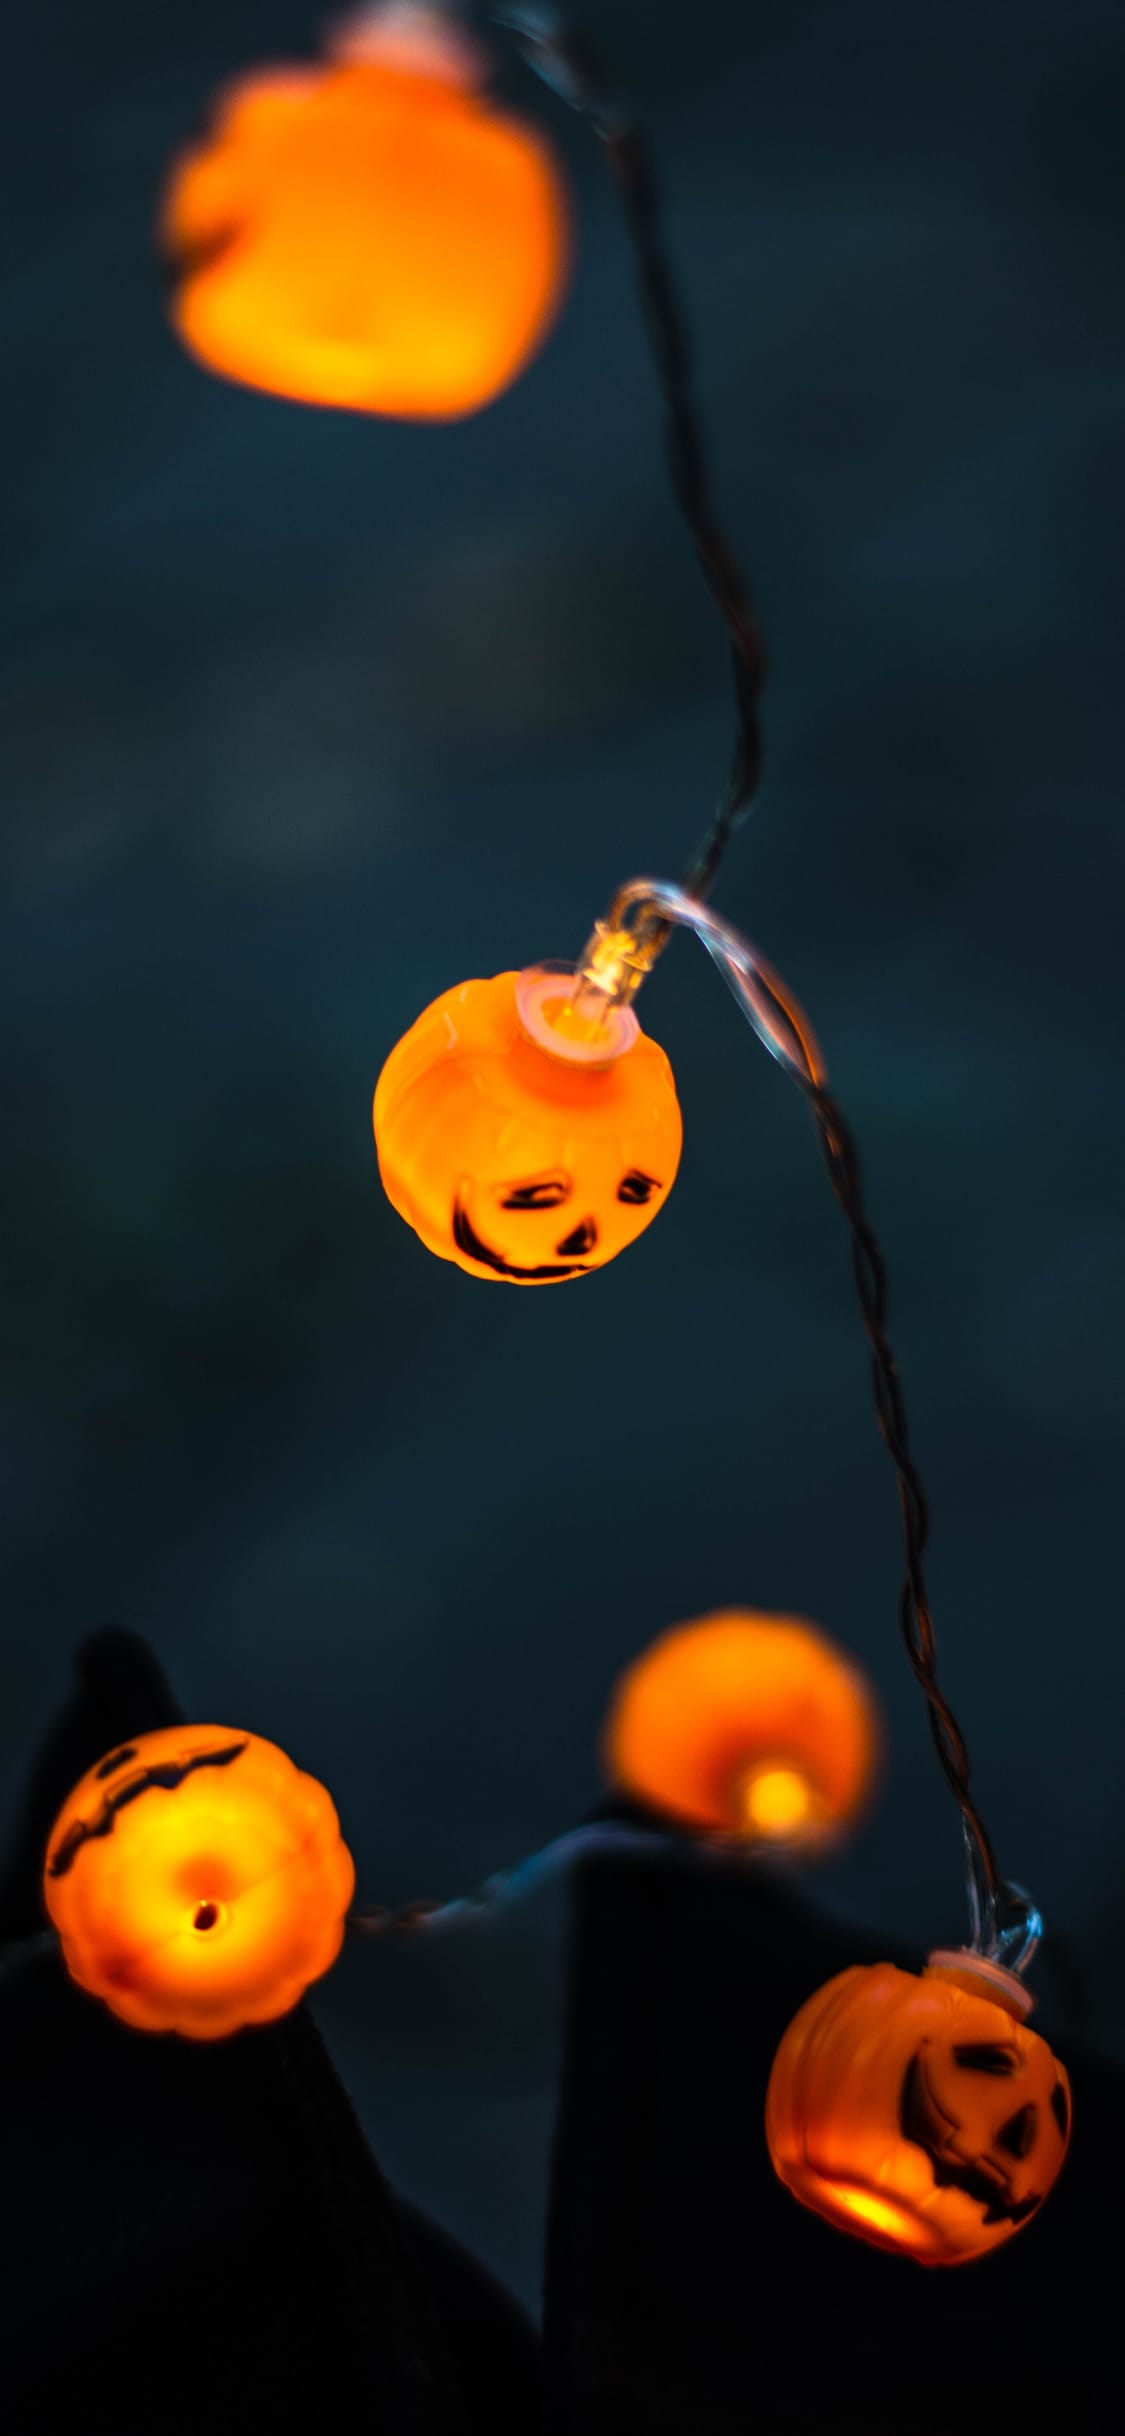 halloween-wallpaper-backgrounds-gameznet-00031.jpg